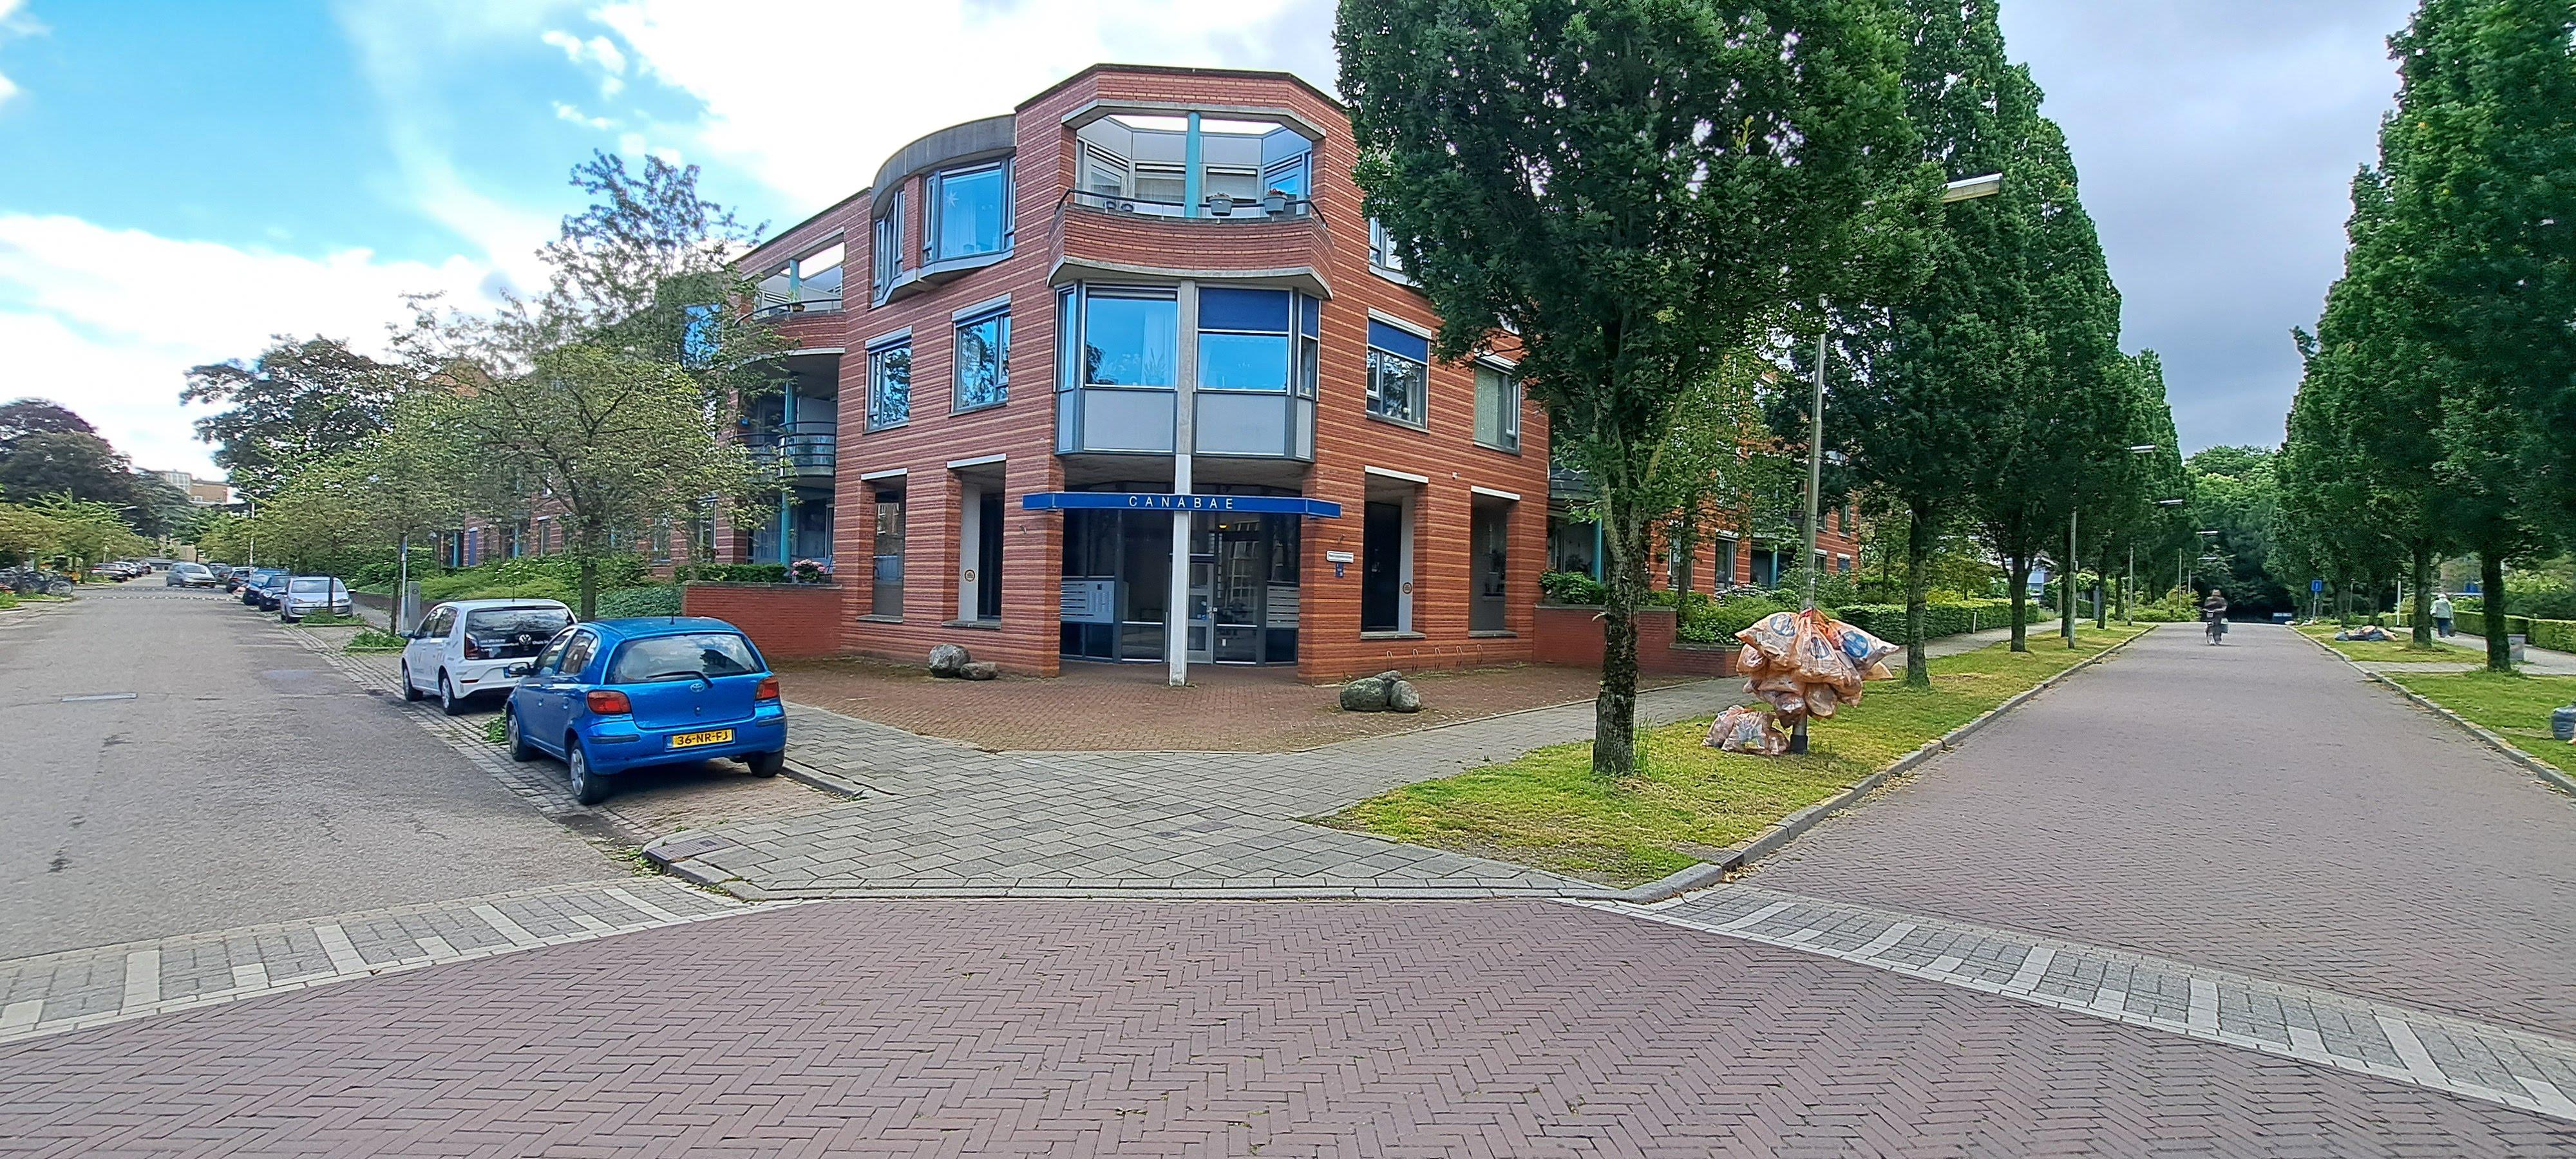 Pater Leijdekkersstraat 73, 6522 MH Nijmegen, Nederland